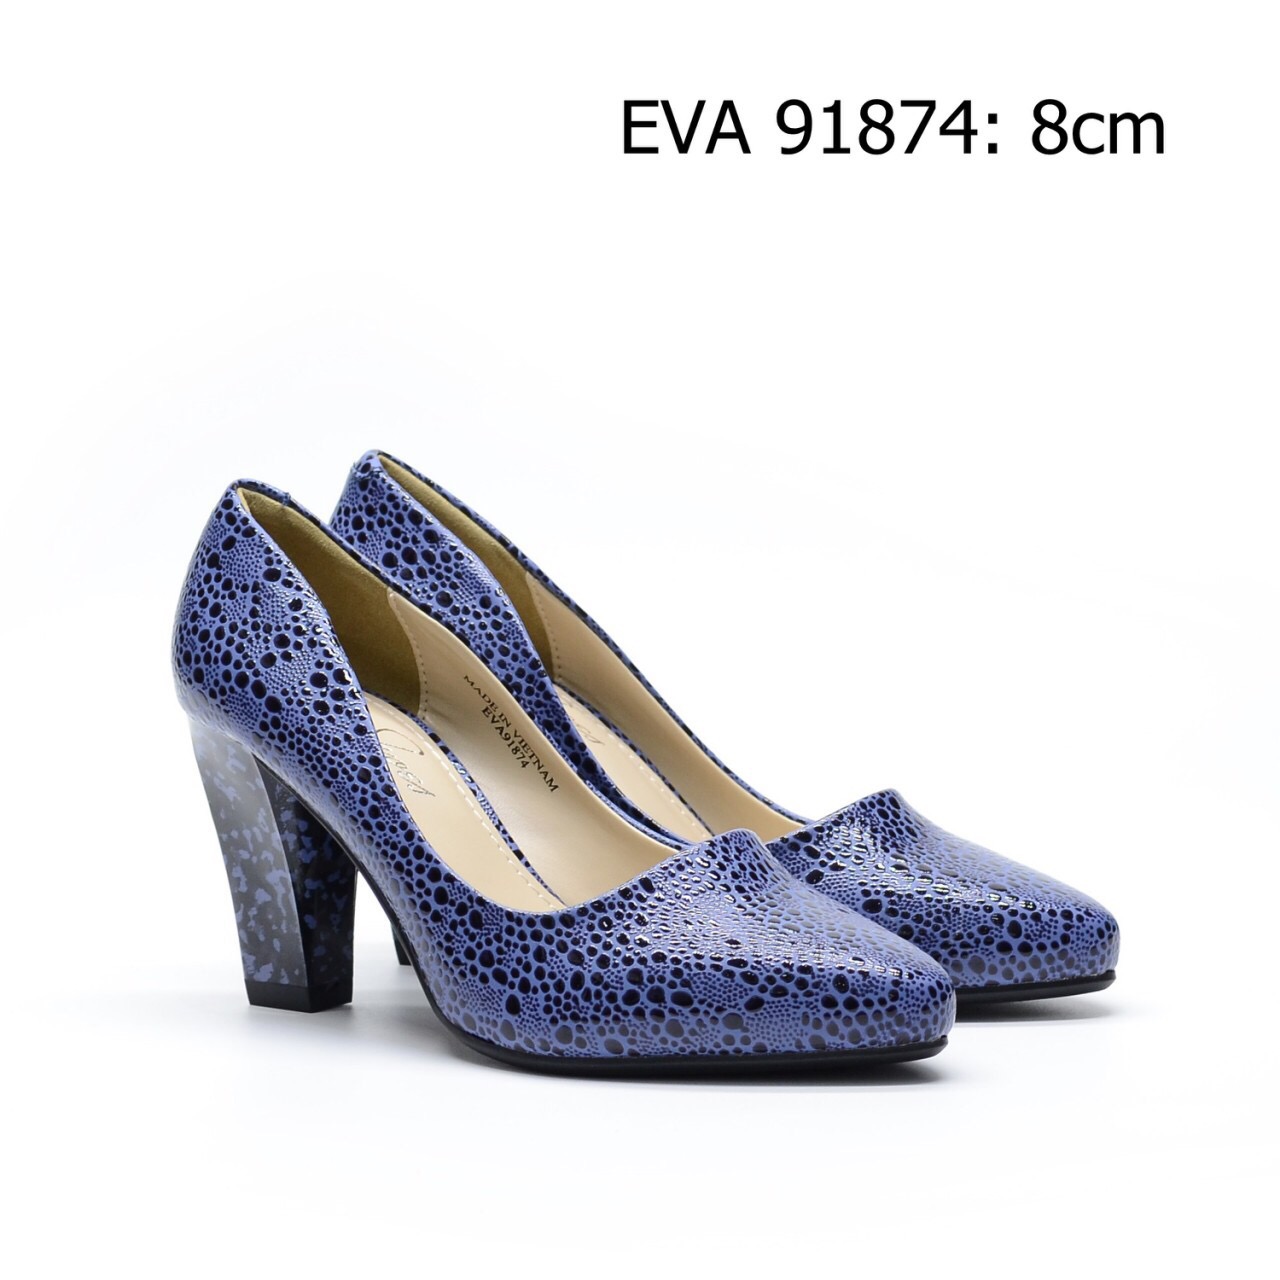 Giày cao gót thời trang EVA91874 họa tiết mới lạ, độc đáo